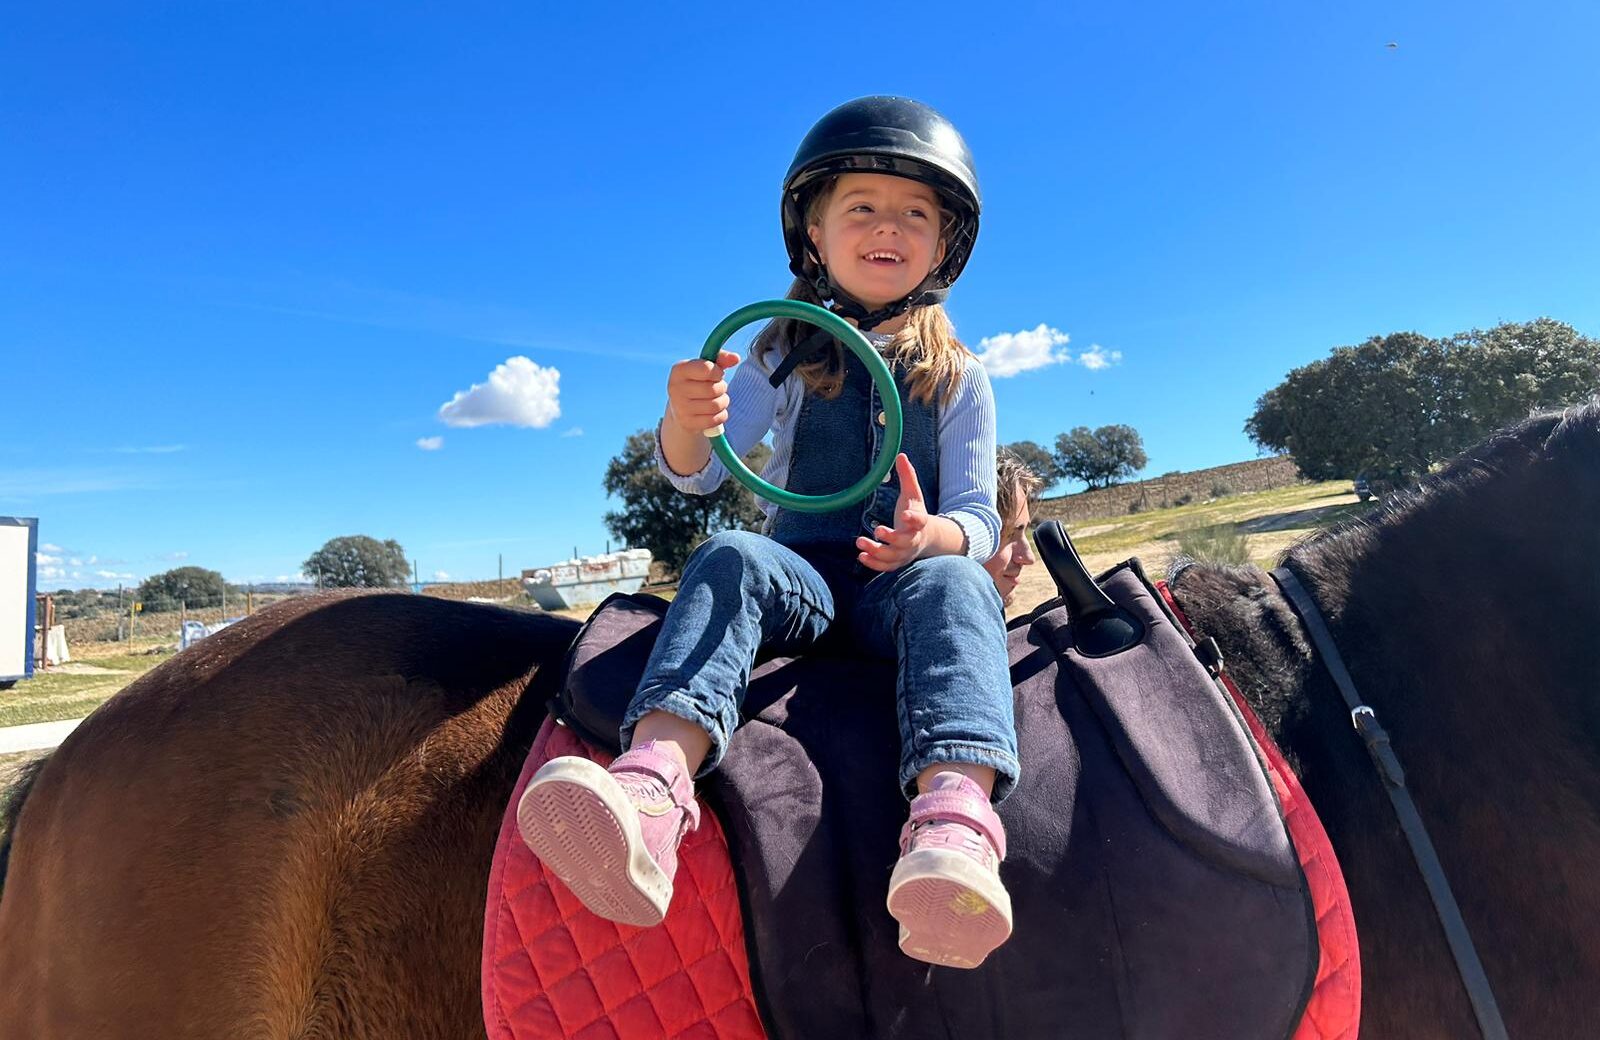 Fotografía de una niña montando a caballo durante una actividad